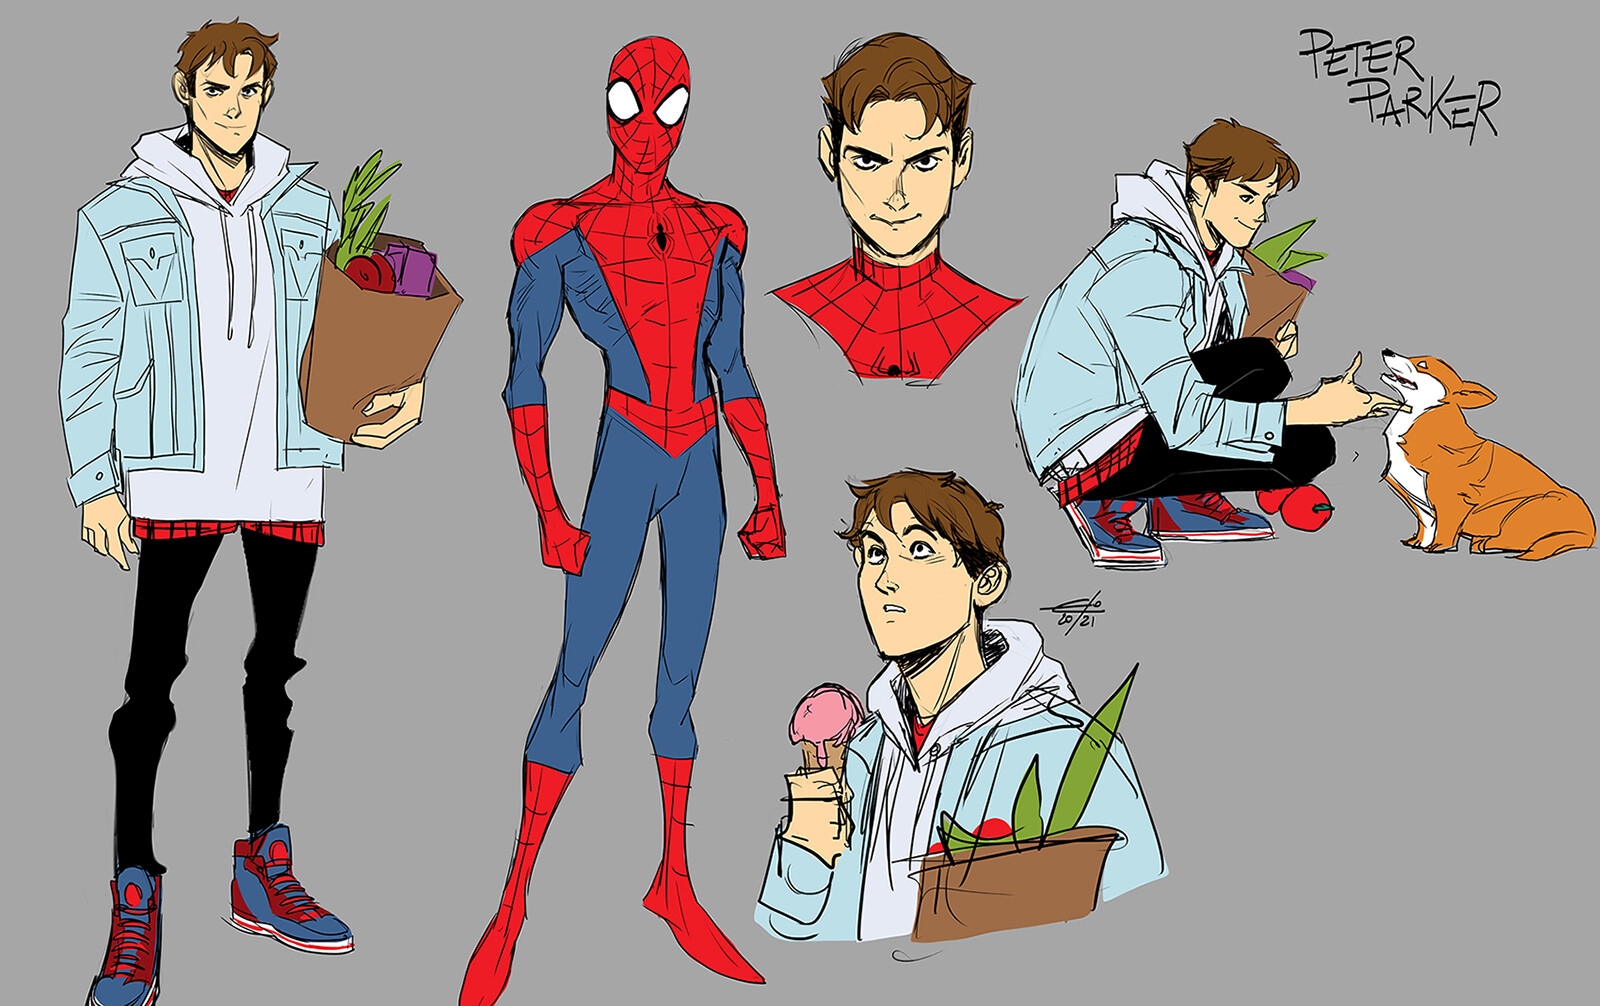 ArtStation - Peter Parker - Spider-Man Character Design